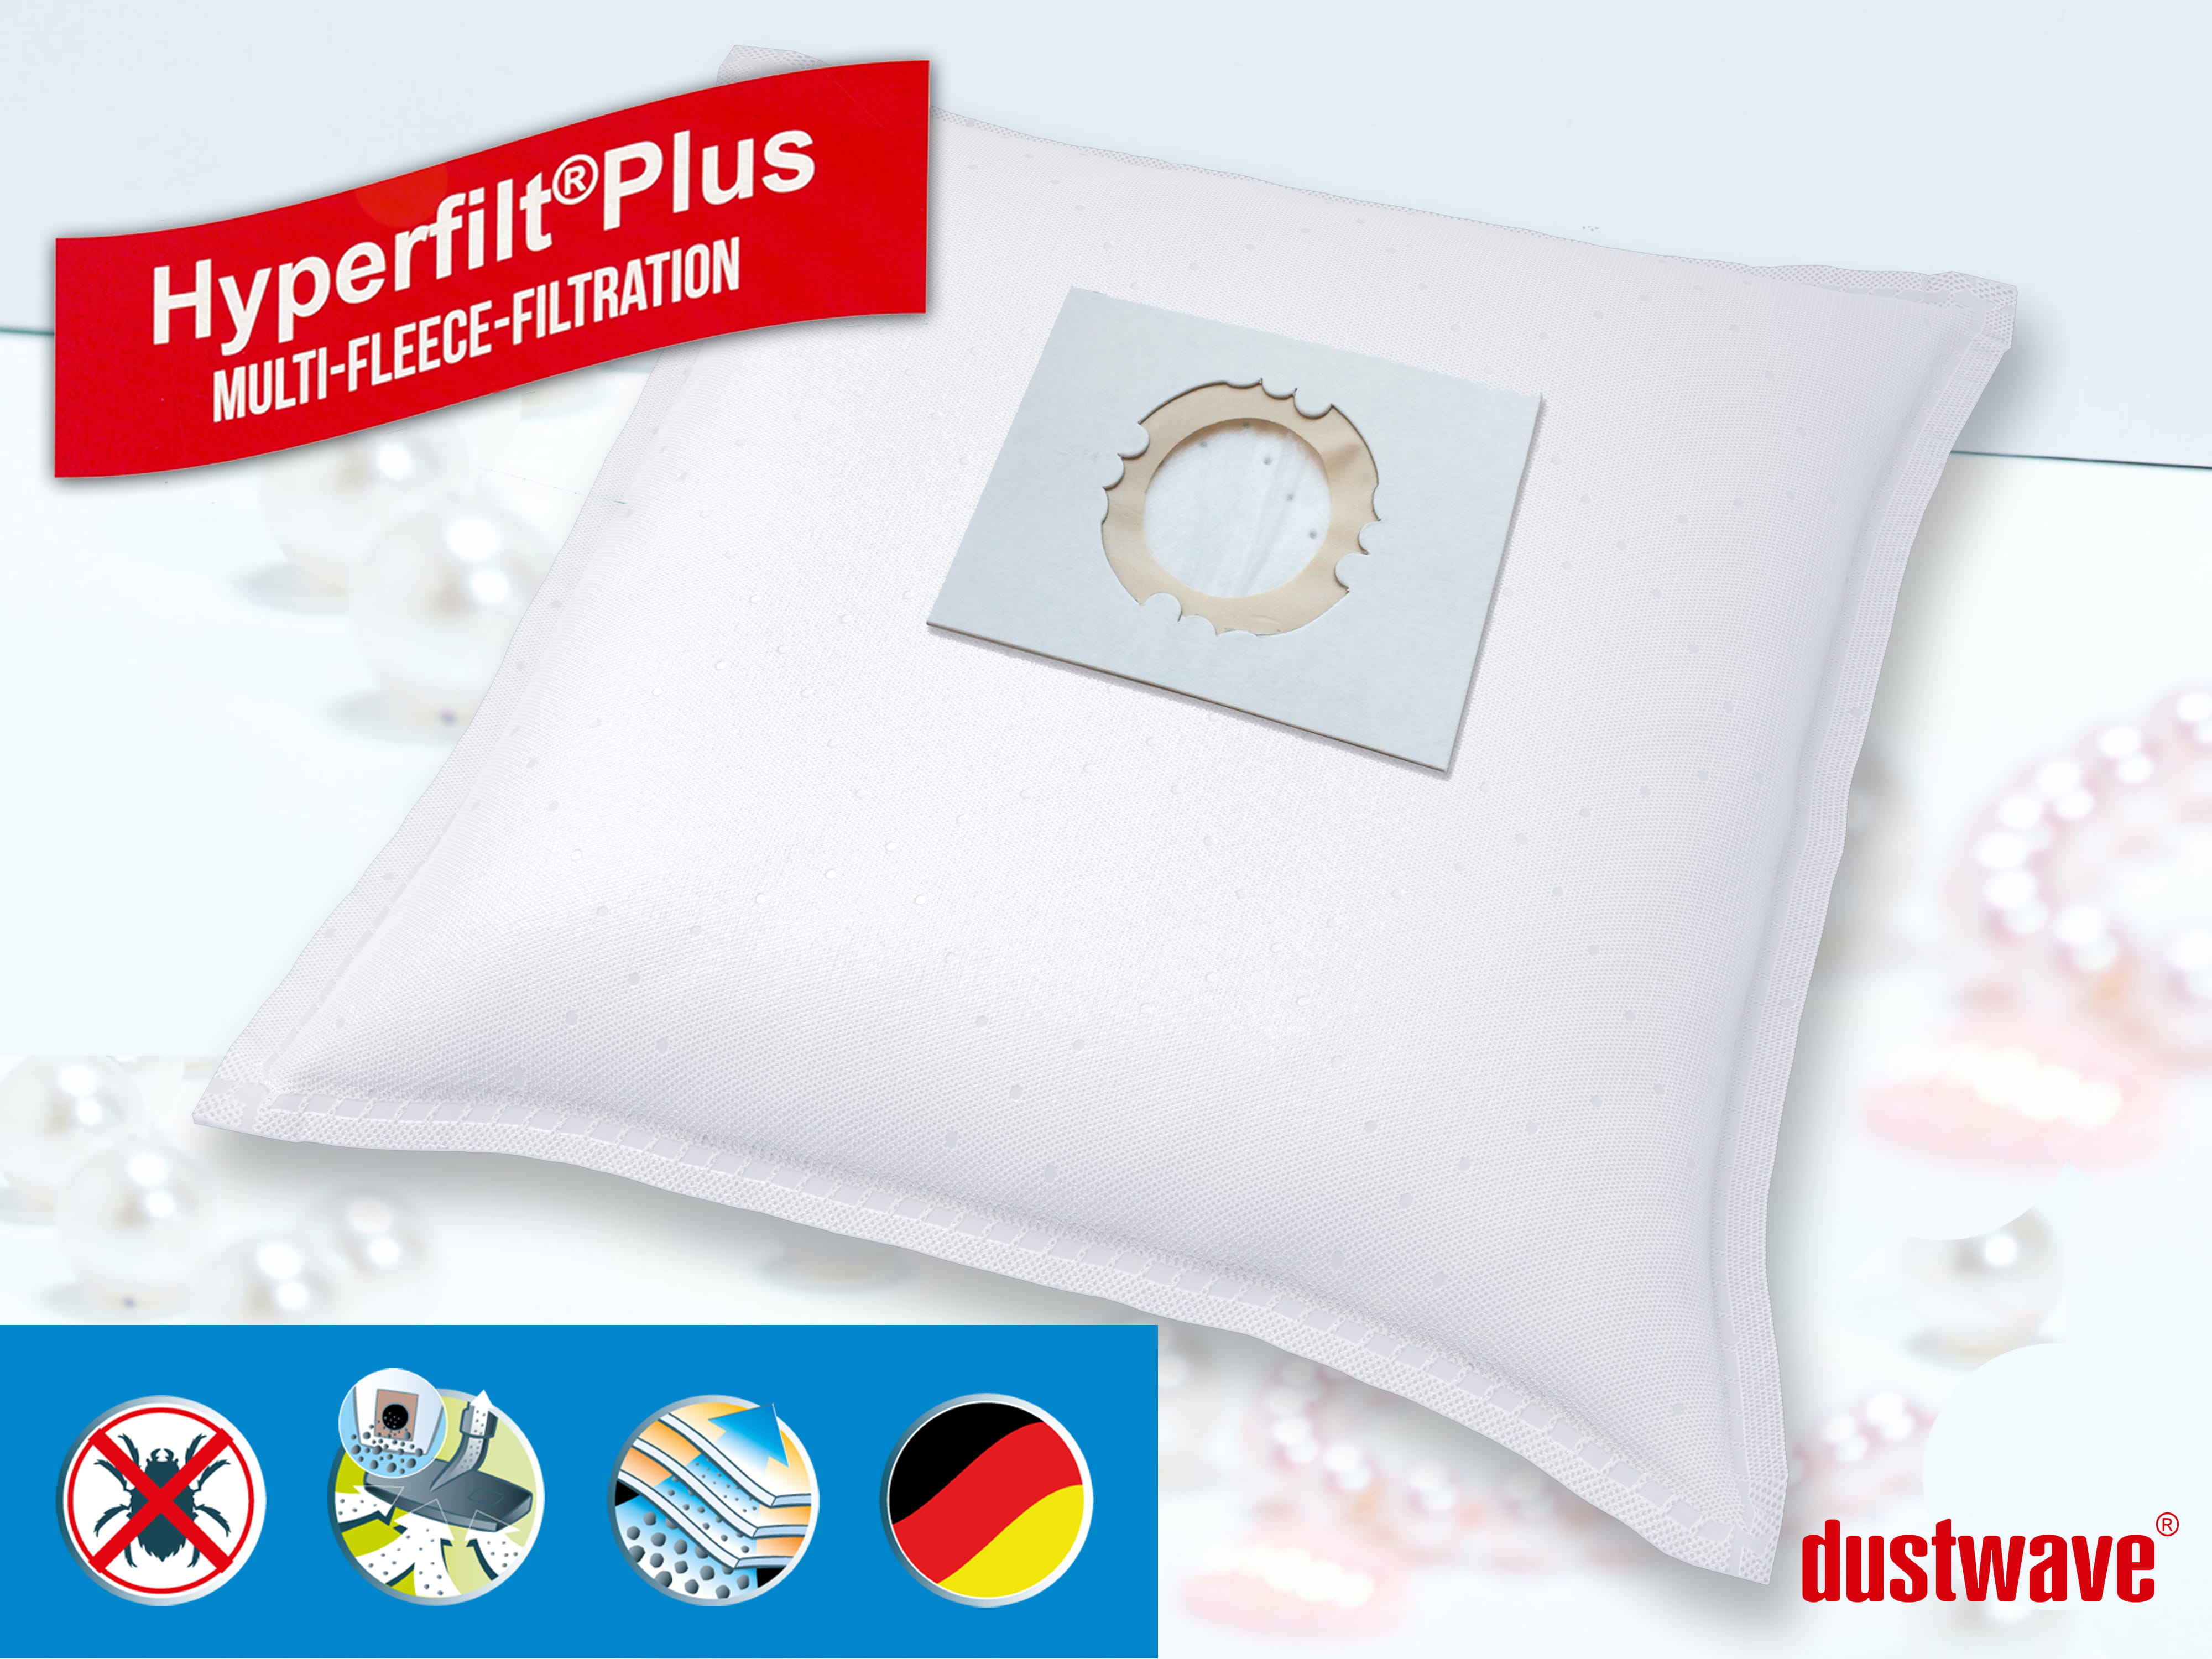 Dustwave® 10 Staubsaugerbeutel für Hoover BD S6145001 - hocheffizient, mehrlagiges Mikrovlies mit Hygieneverschluss - Made in Germany